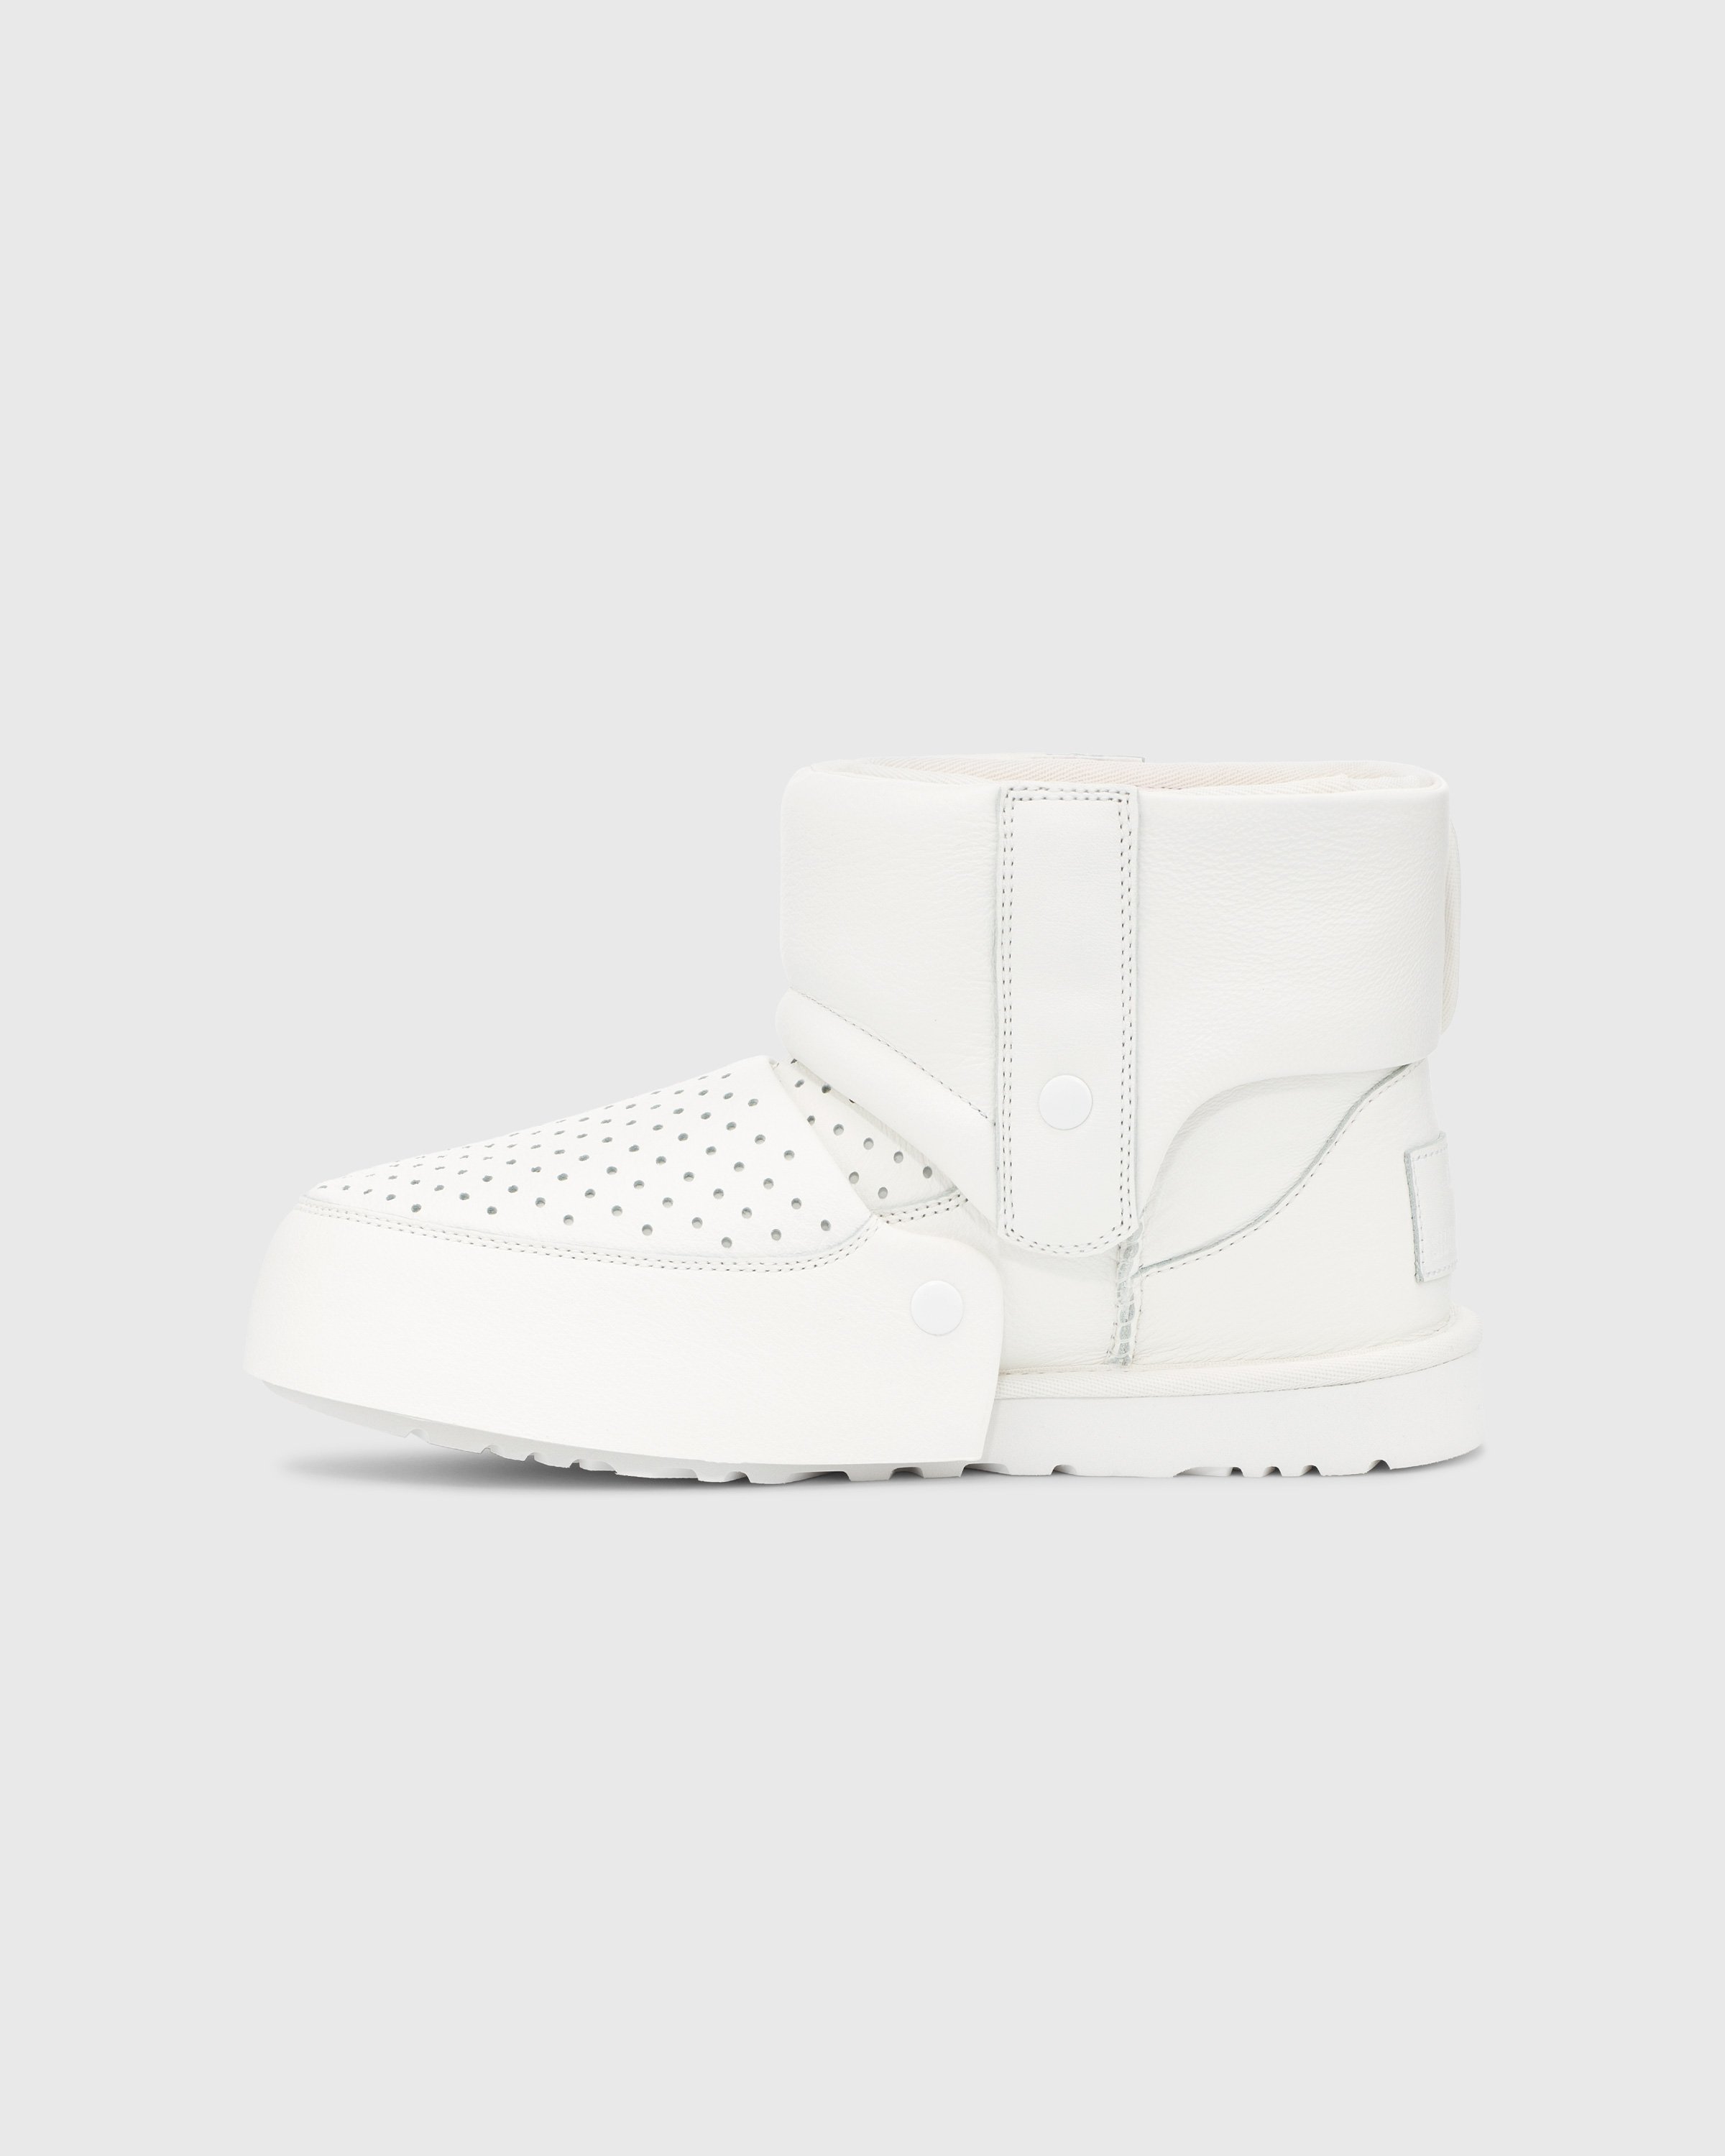 Ugg x Shayne Oliver - Mini Boot White - Footwear - White - Image 2